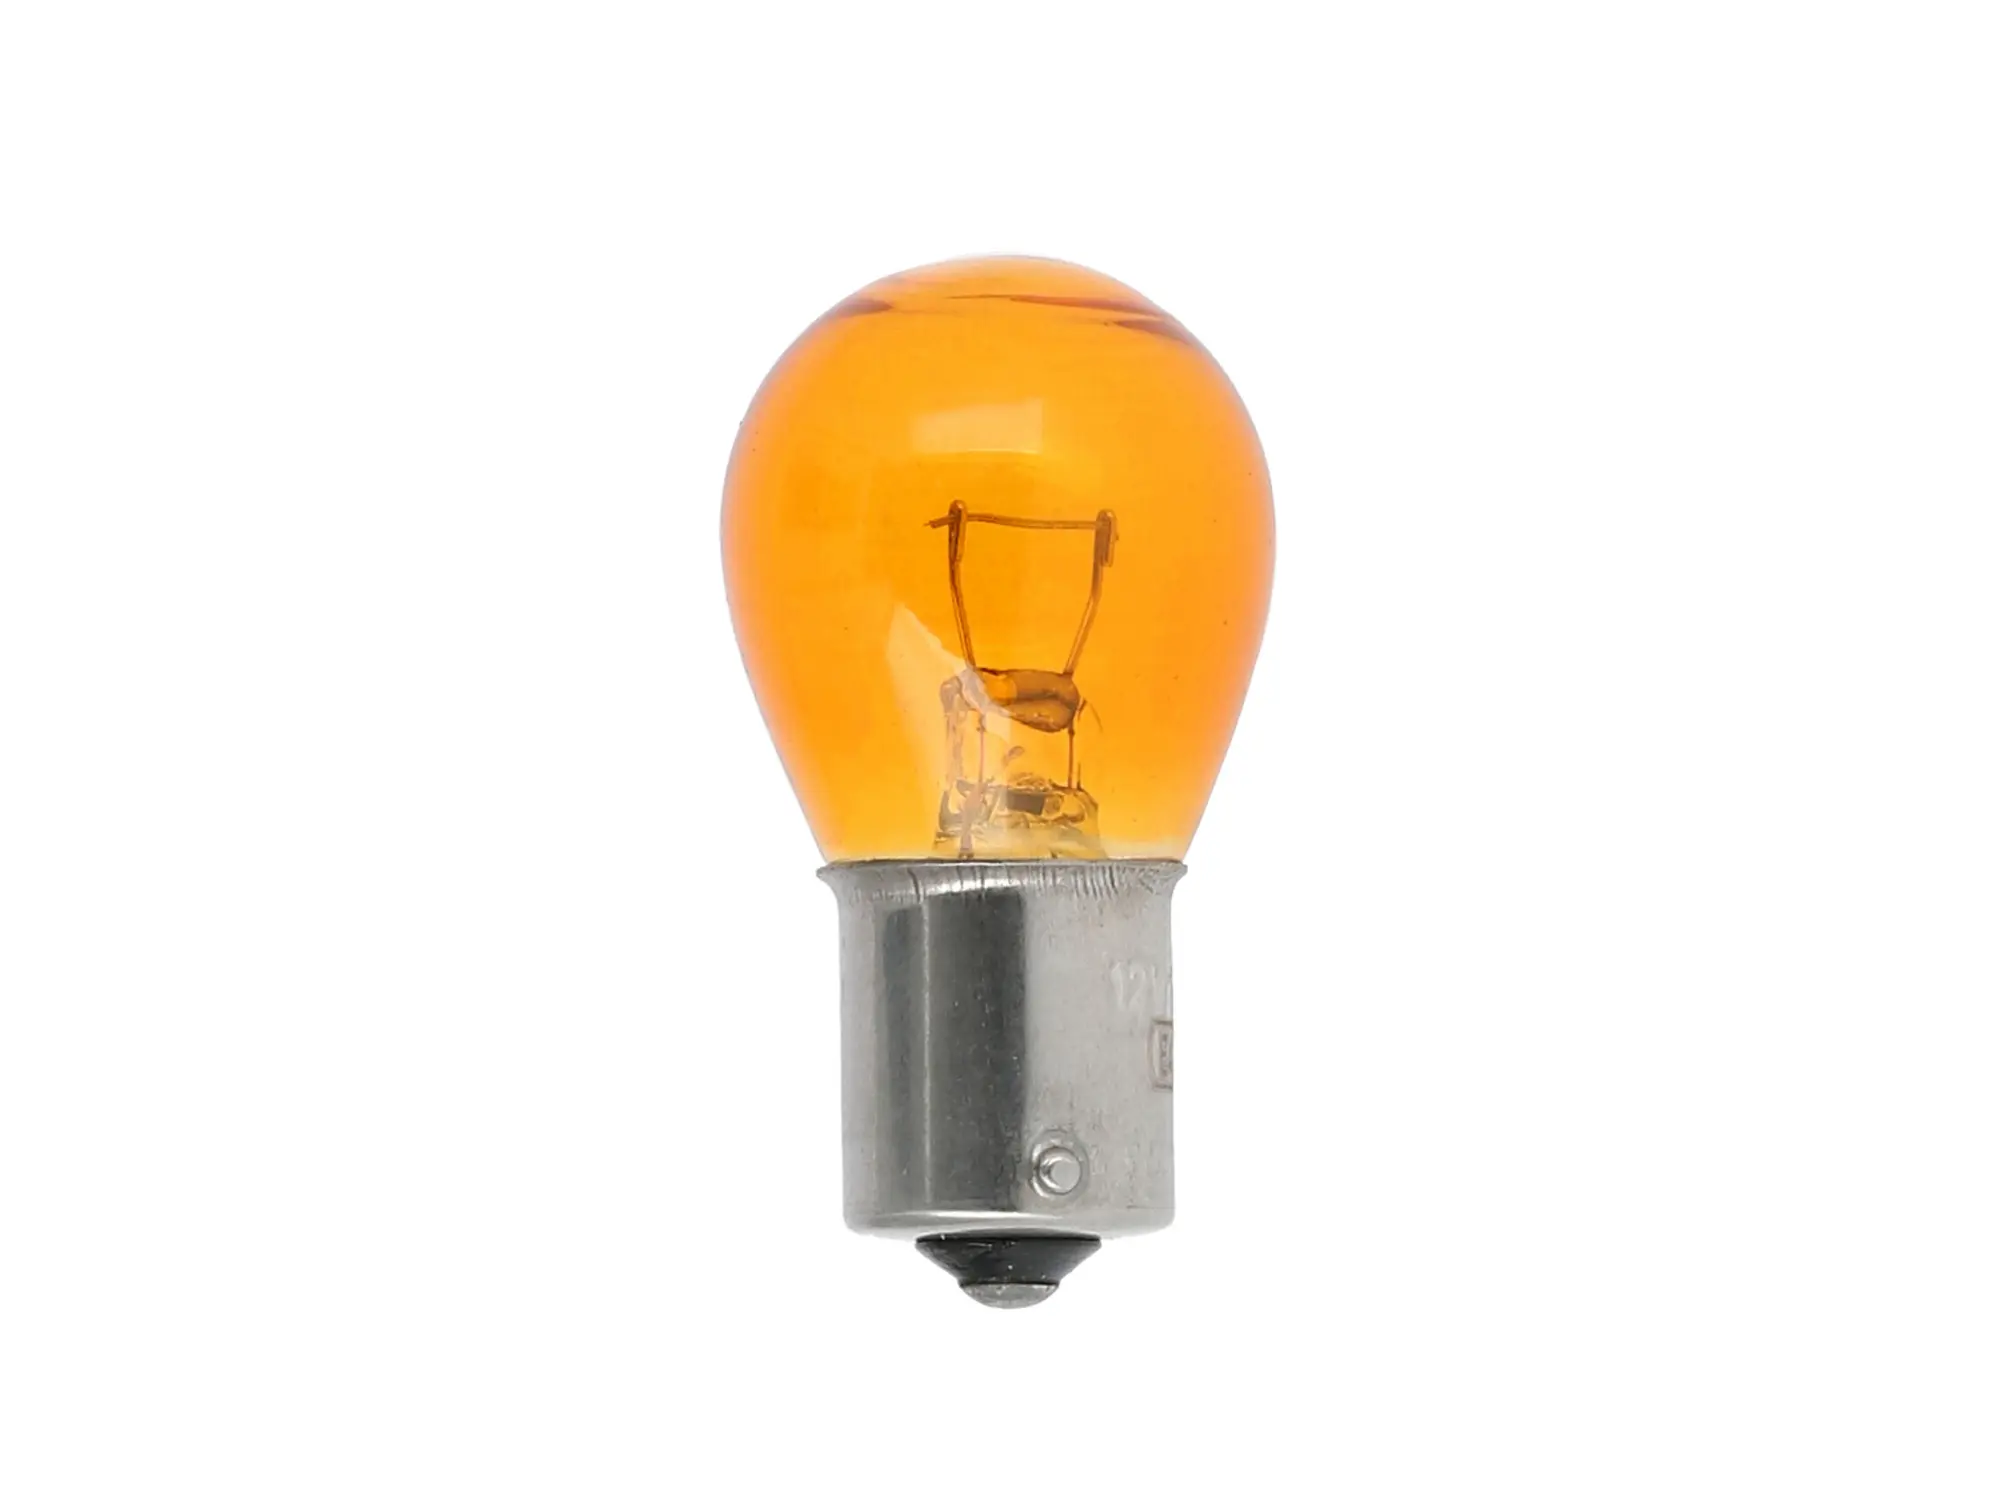 Kugellampe 12V 21W BAU15s orange, von VEBCO, Art.-Nr.: 10071519 - Bild 1